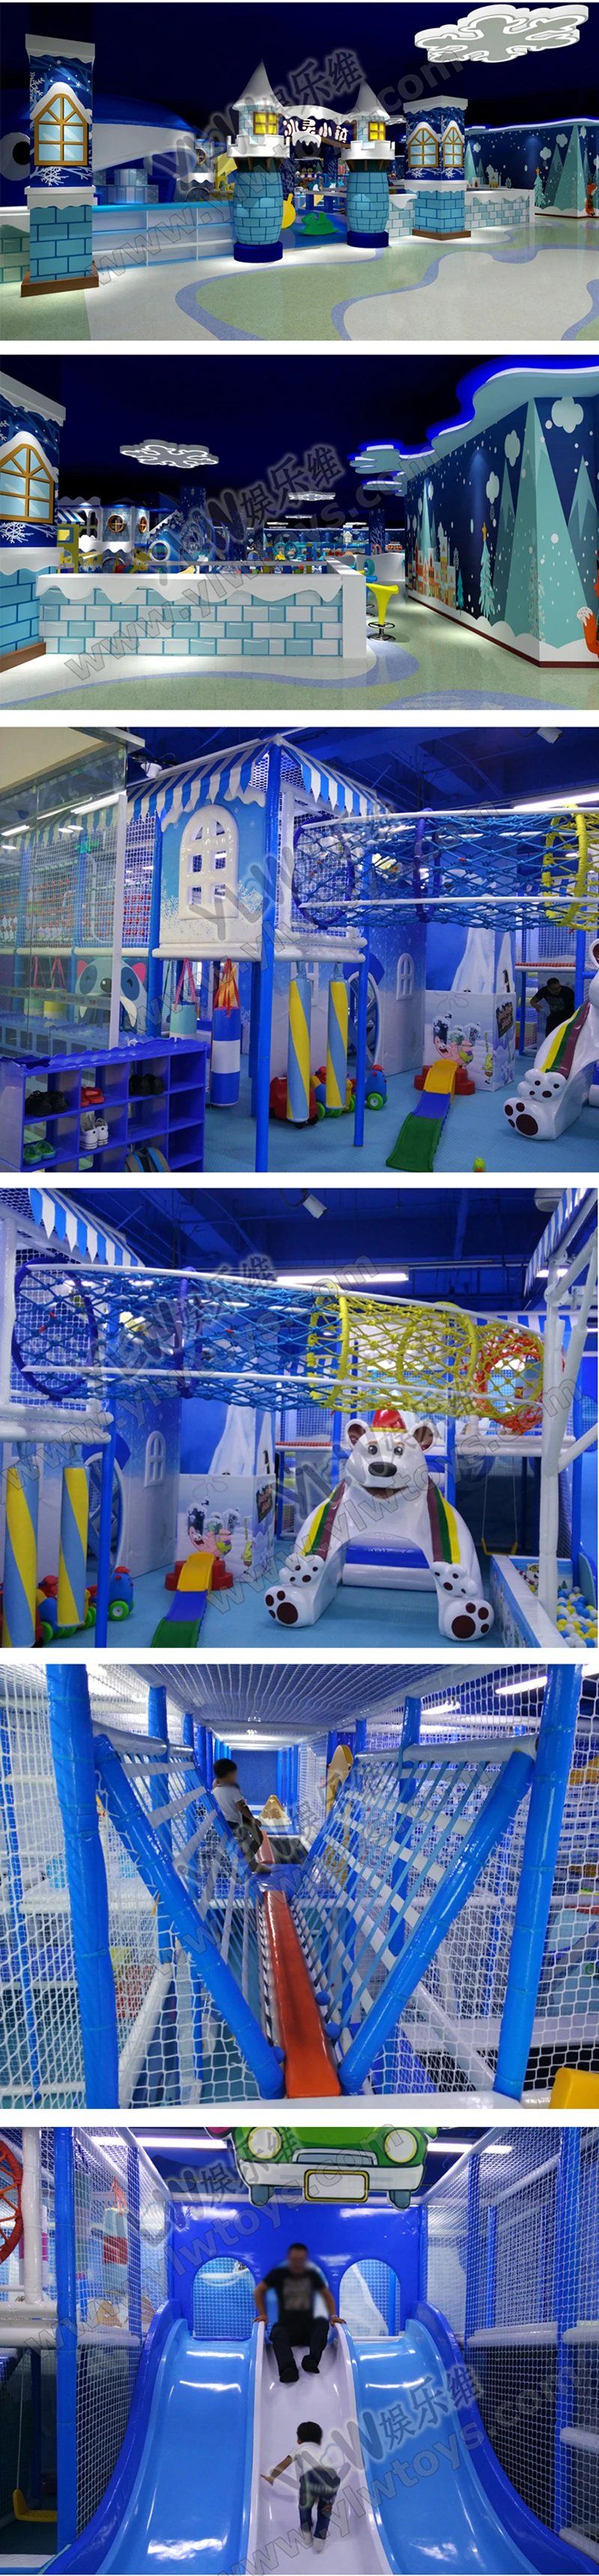 CE, TUV сертифицированный детские мягкие игровые наборы indoor конструкция детской площадки горки для детей коммерческих мягкая игровая